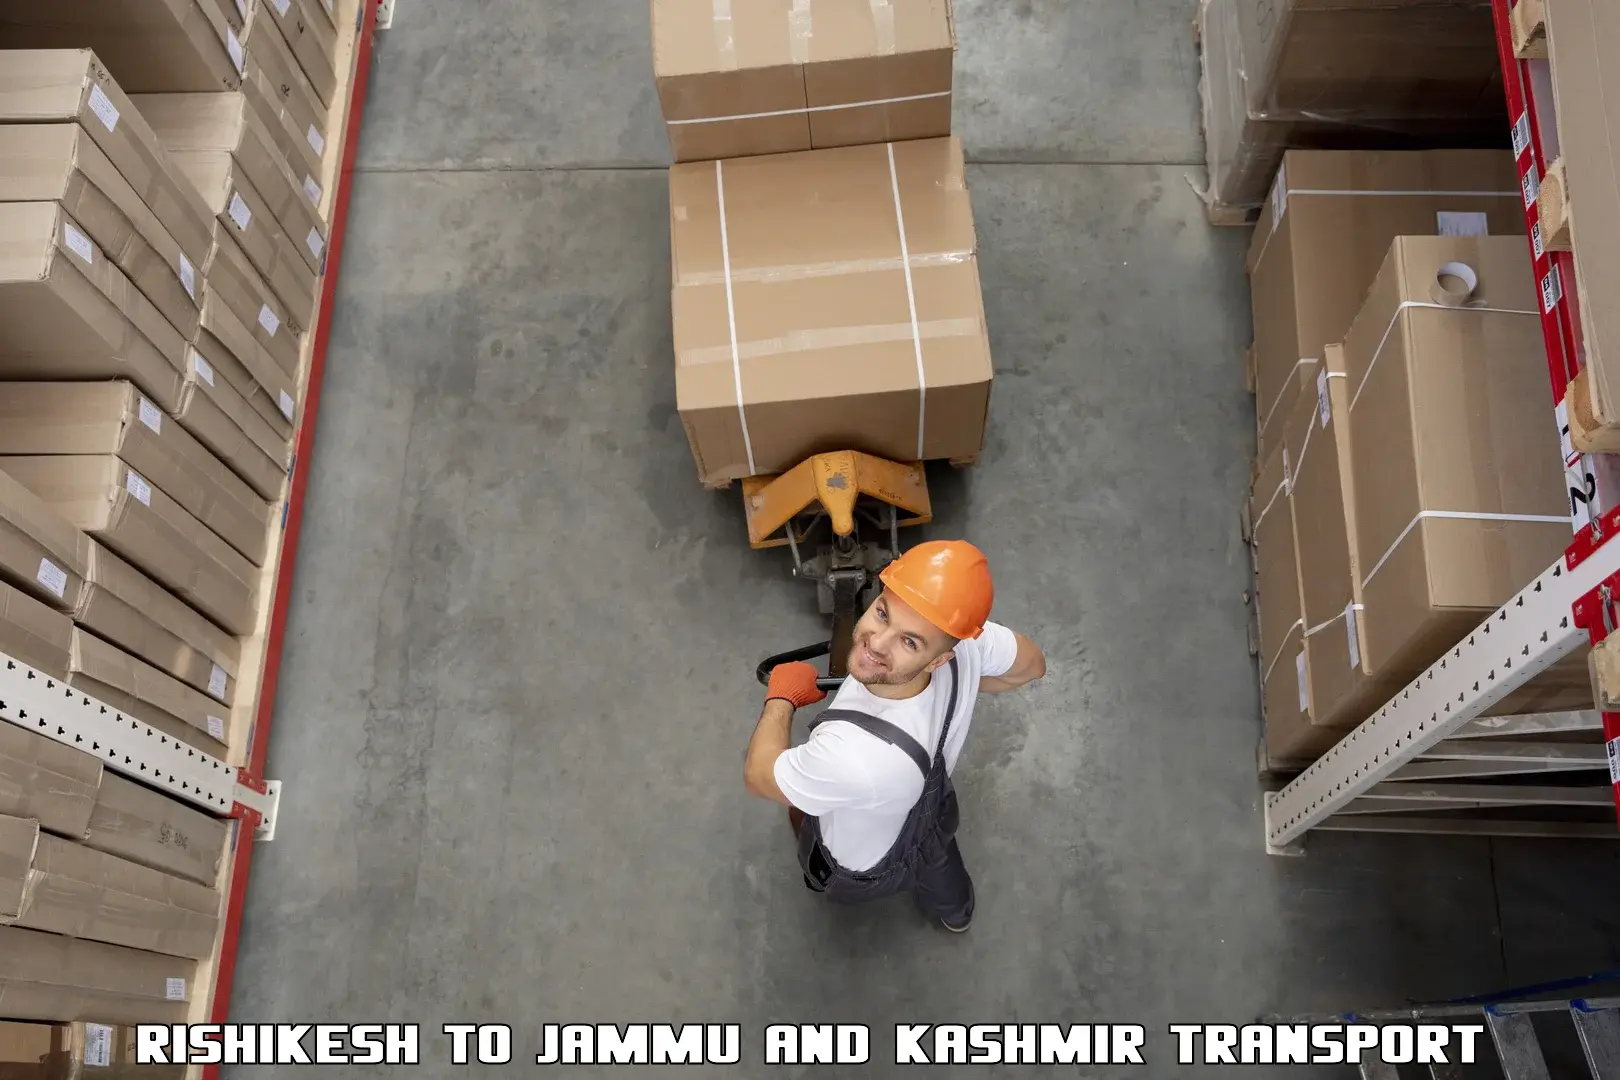 Pick up transport service Rishikesh to University of Jammu